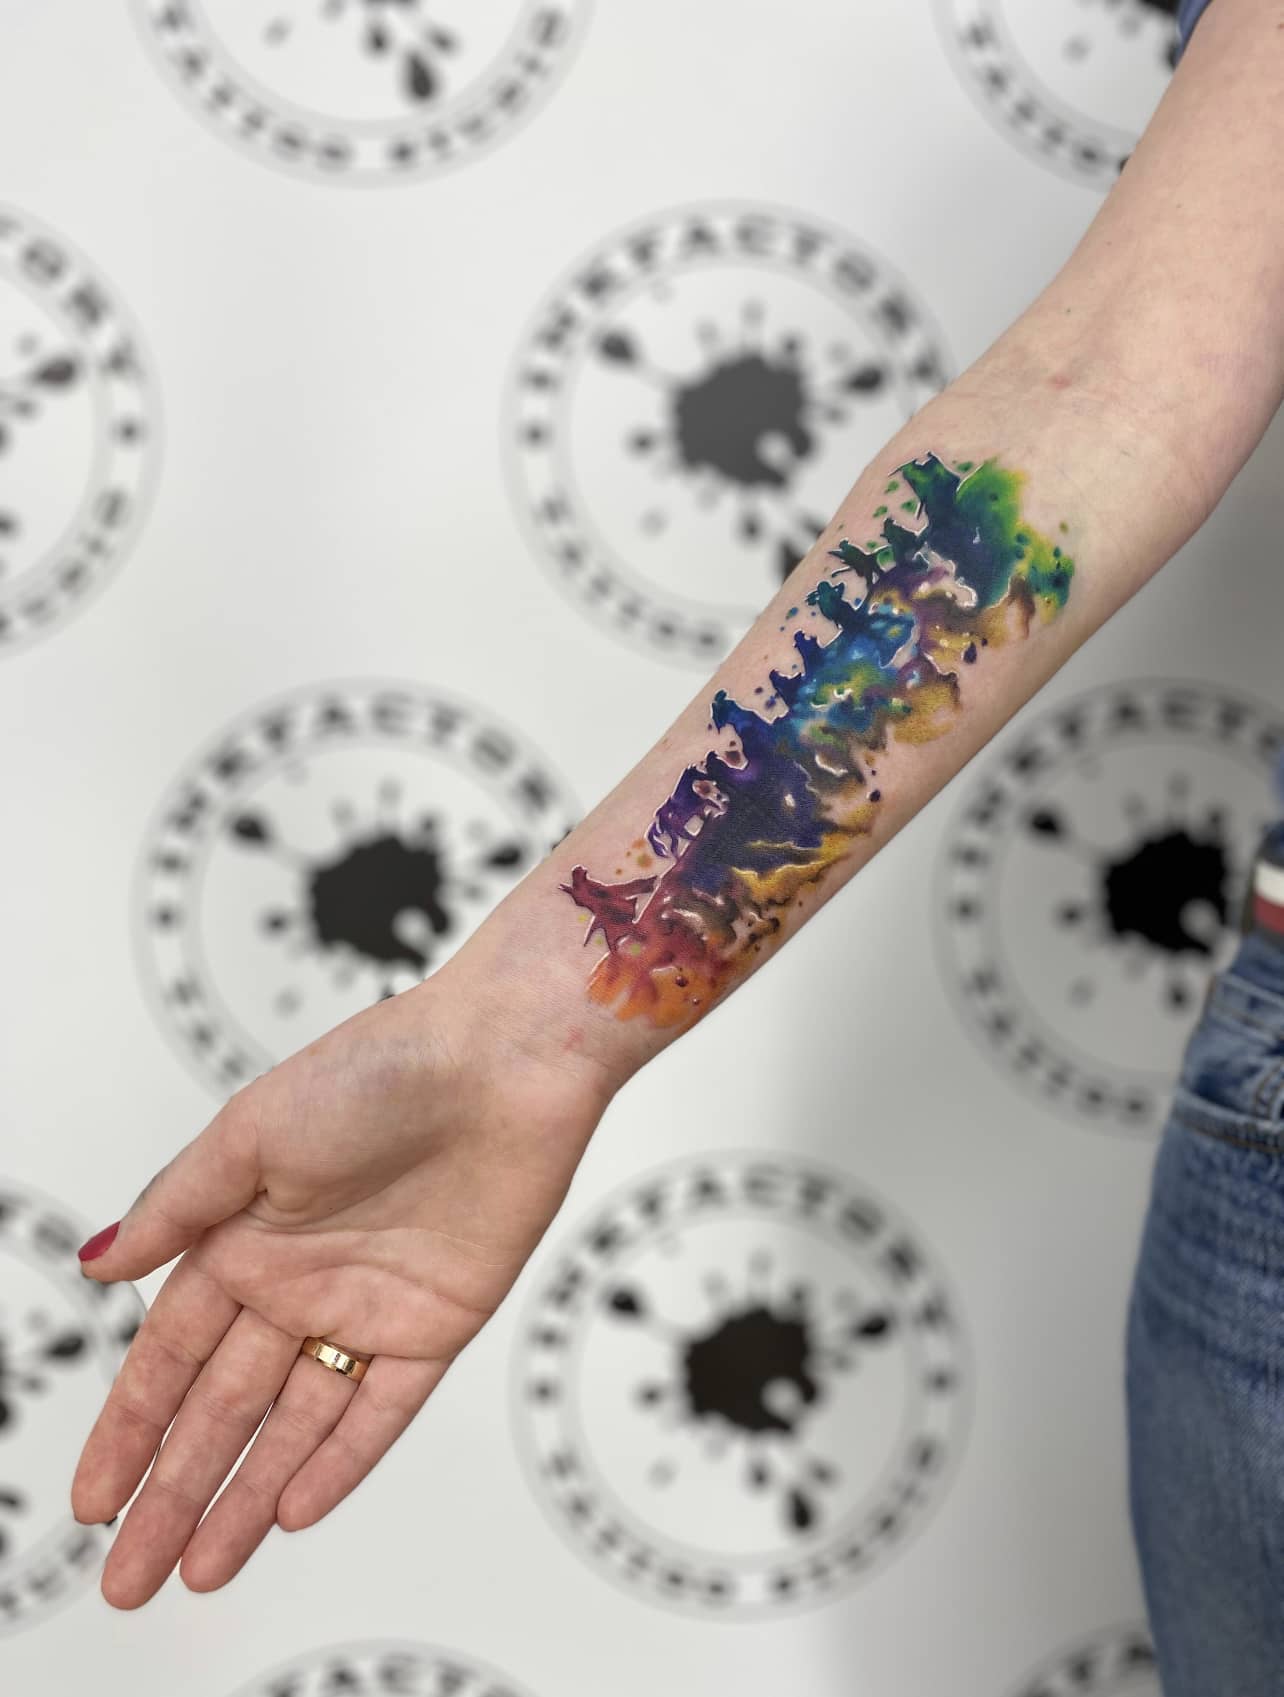 Тату на запястье - идея крутой татуировки - фото эскизы маленьких красивых татух для мужчин и женщин - 4397 шт.